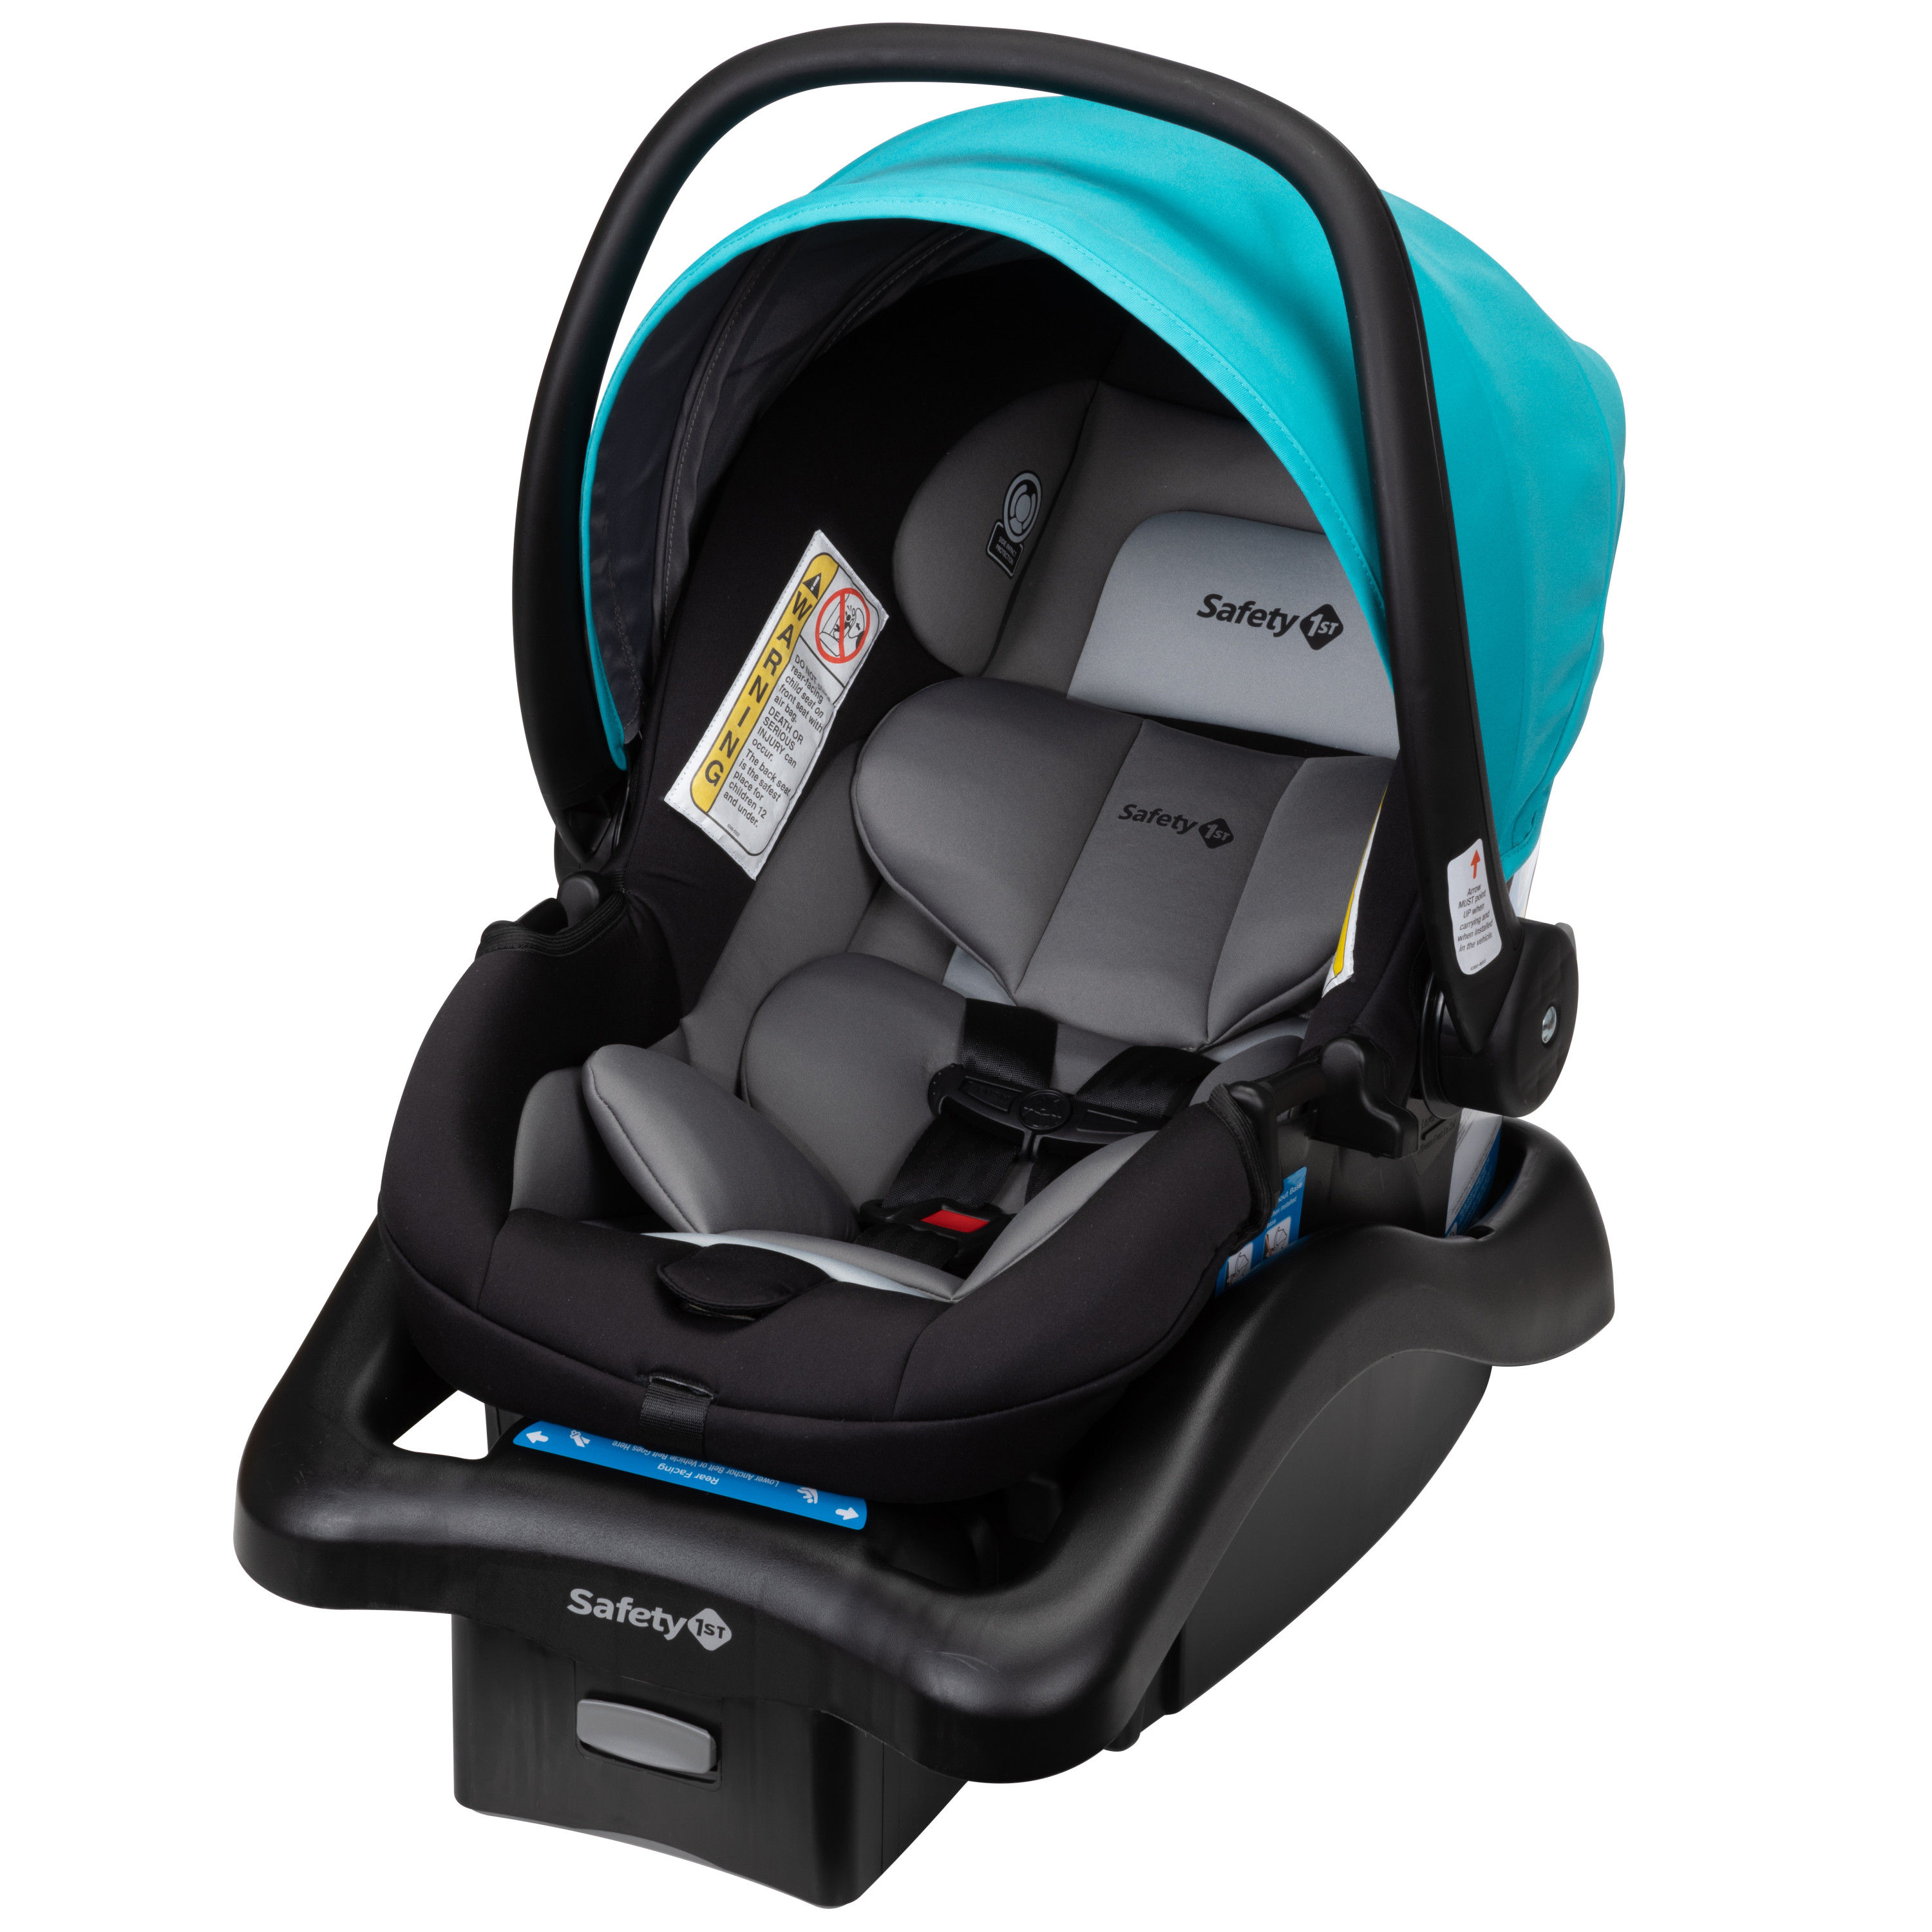 Safety 1ˢᵗ onBoard 35 LT Infant Car Seat, Lake Blue - image 1 of 18